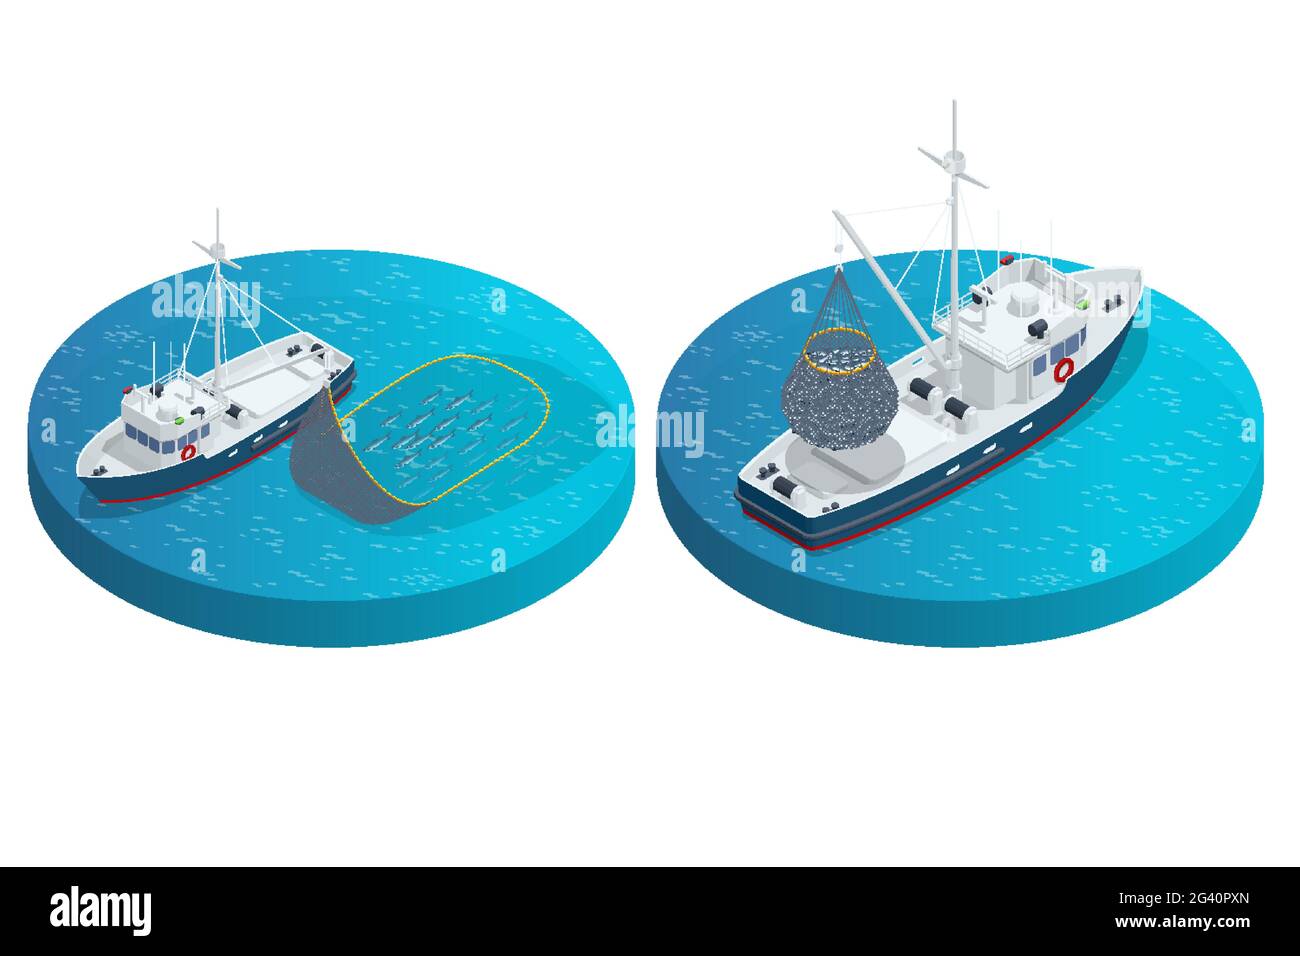 Spedizione isometrica industria di pesce barca isolata su sfondo bianco. Trasporto marittimo commerciale pesca marittima, industria marittima della nave, barca di pesce Illustrazione Vettoriale